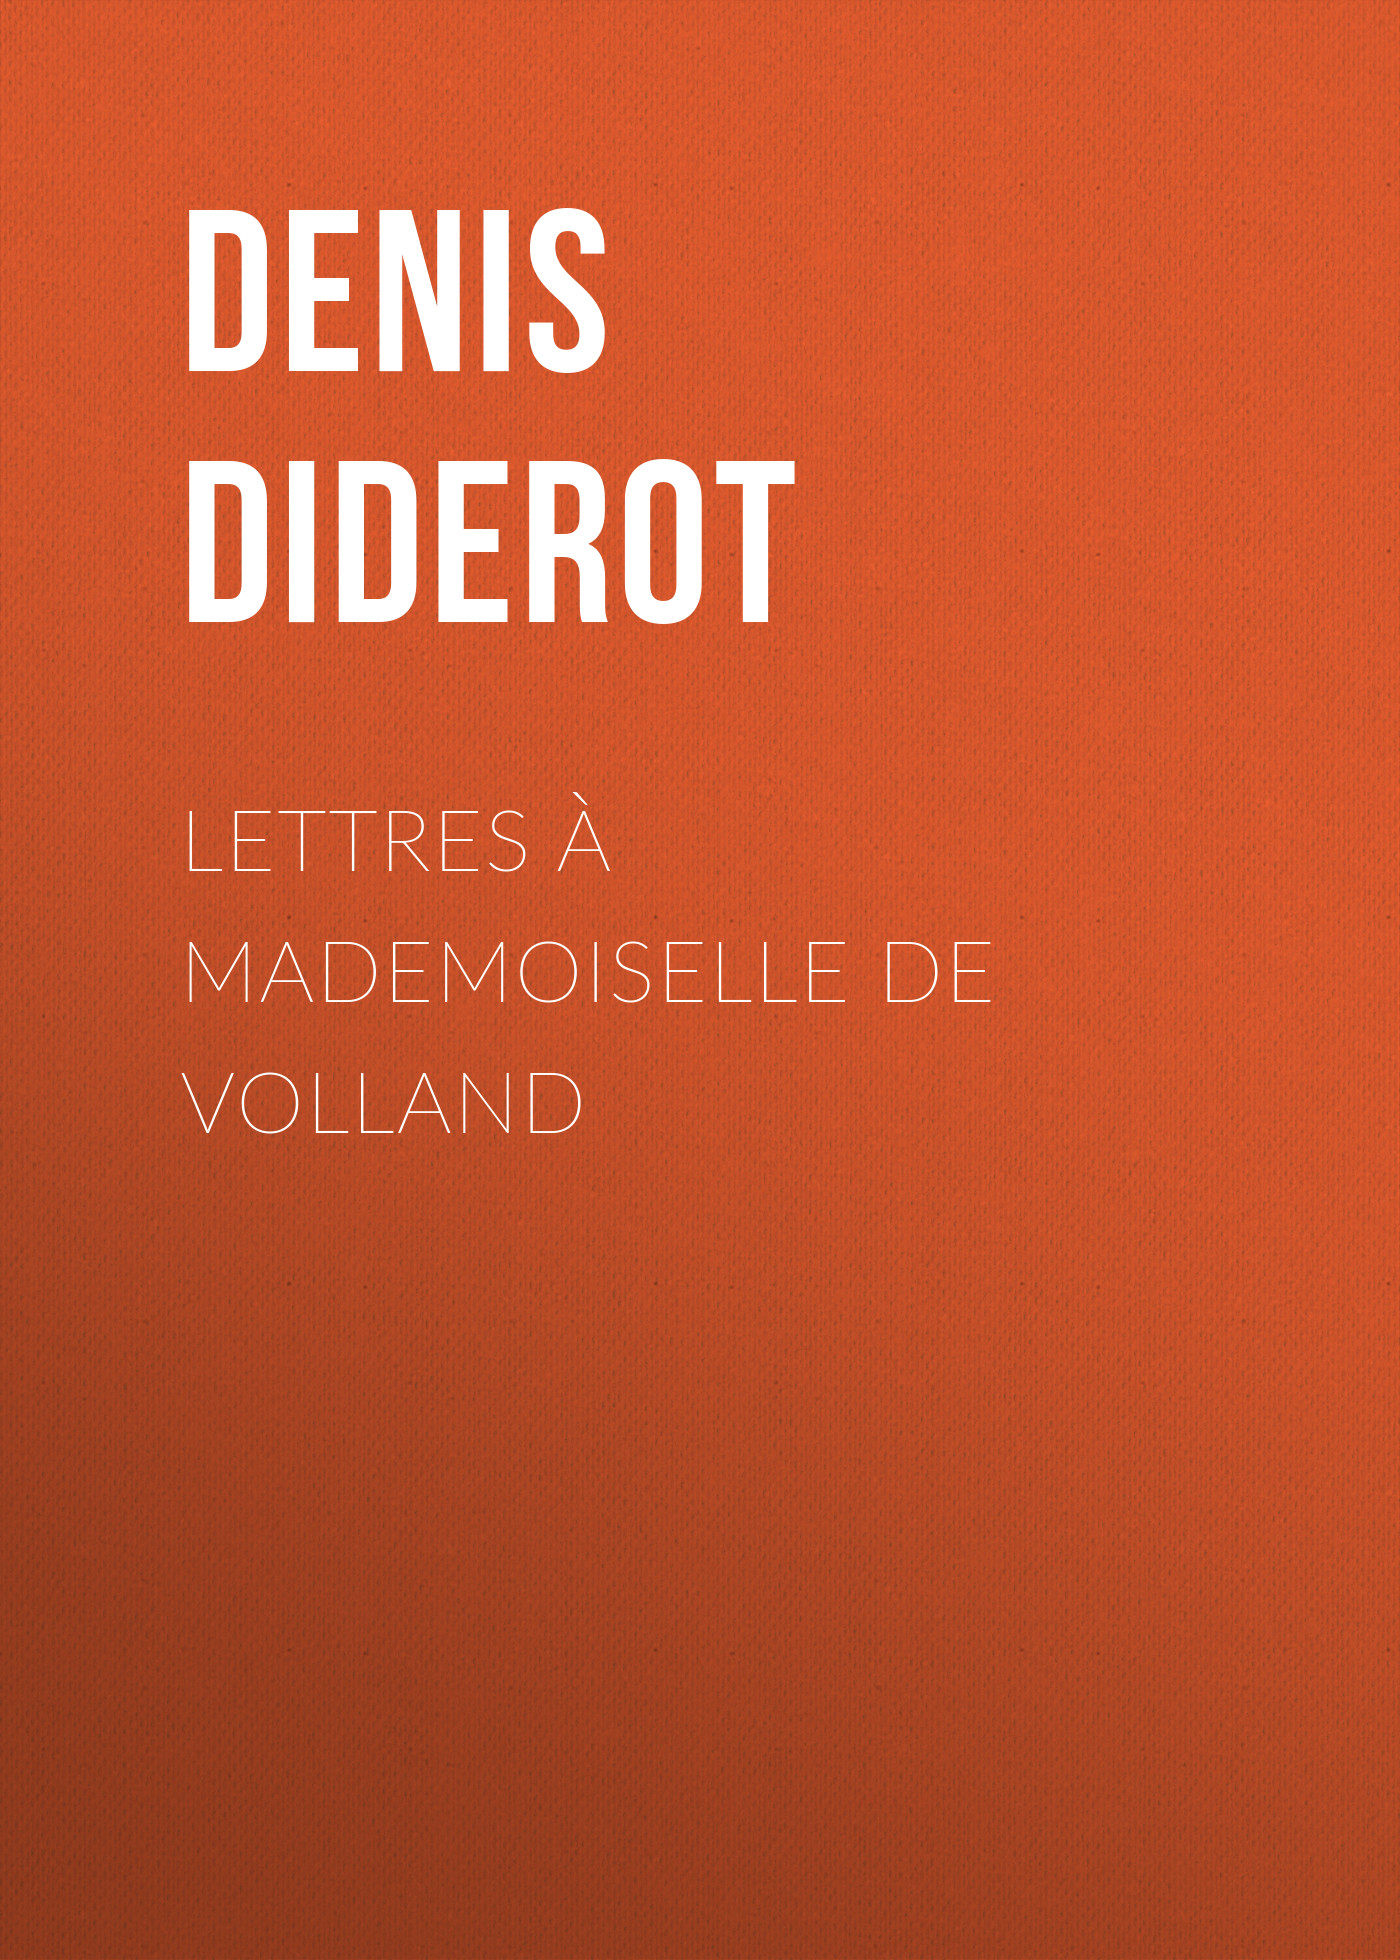 Книга Lettres à Mademoiselle de Volland из серии , созданная Denis Diderot, может относится к жанру Зарубежная старинная литература, Зарубежная классика. Стоимость электронной книги Lettres à Mademoiselle de Volland с идентификатором 24548292 составляет 0 руб.